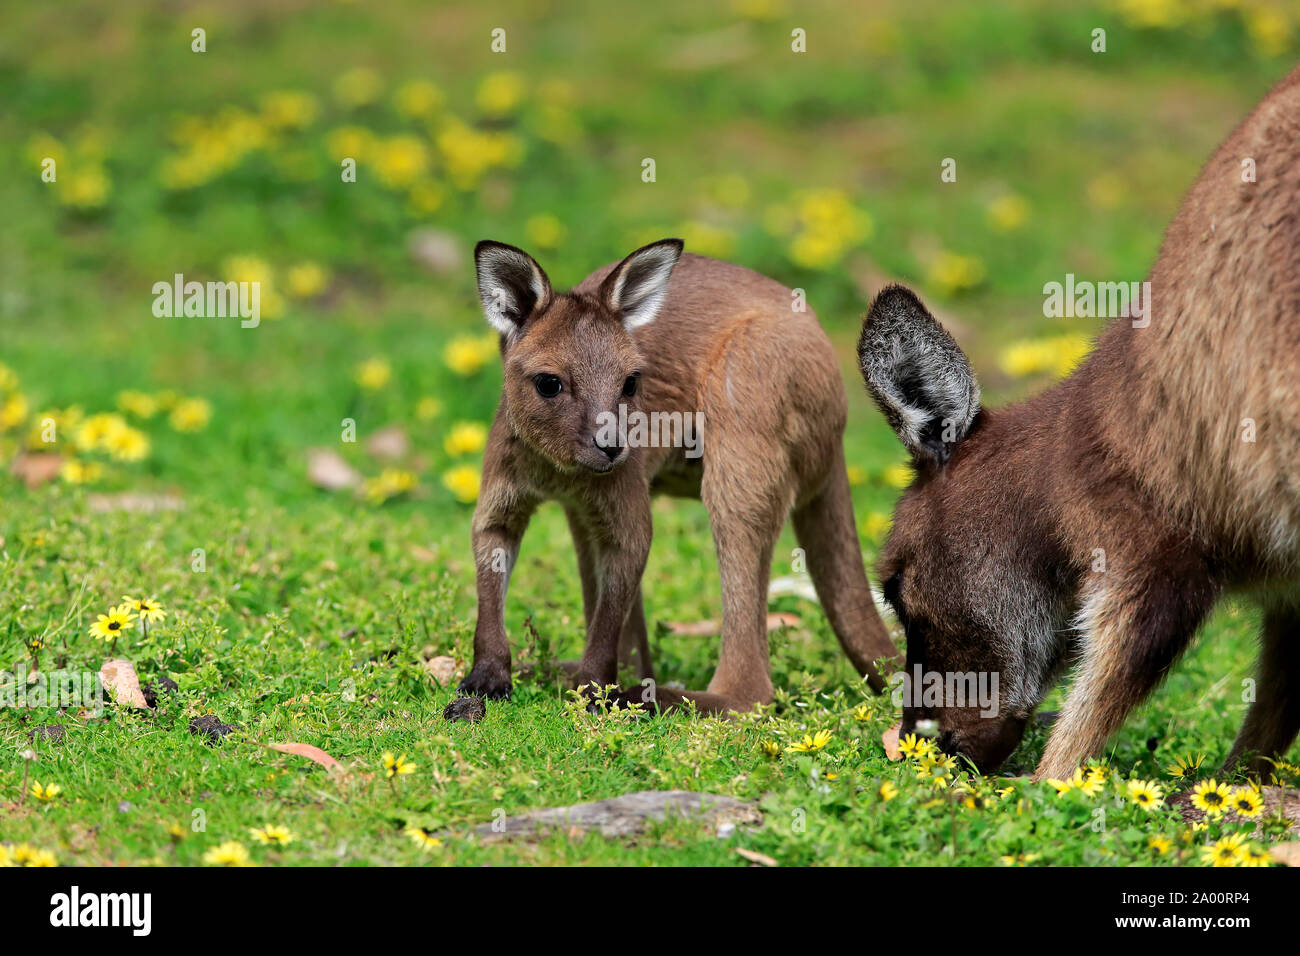 La Isla de los canguros canguro, adulto con Joey, el Mount Lofty, South Australia, Australia (Macropus fuliginosus fuliginosus) Foto de stock